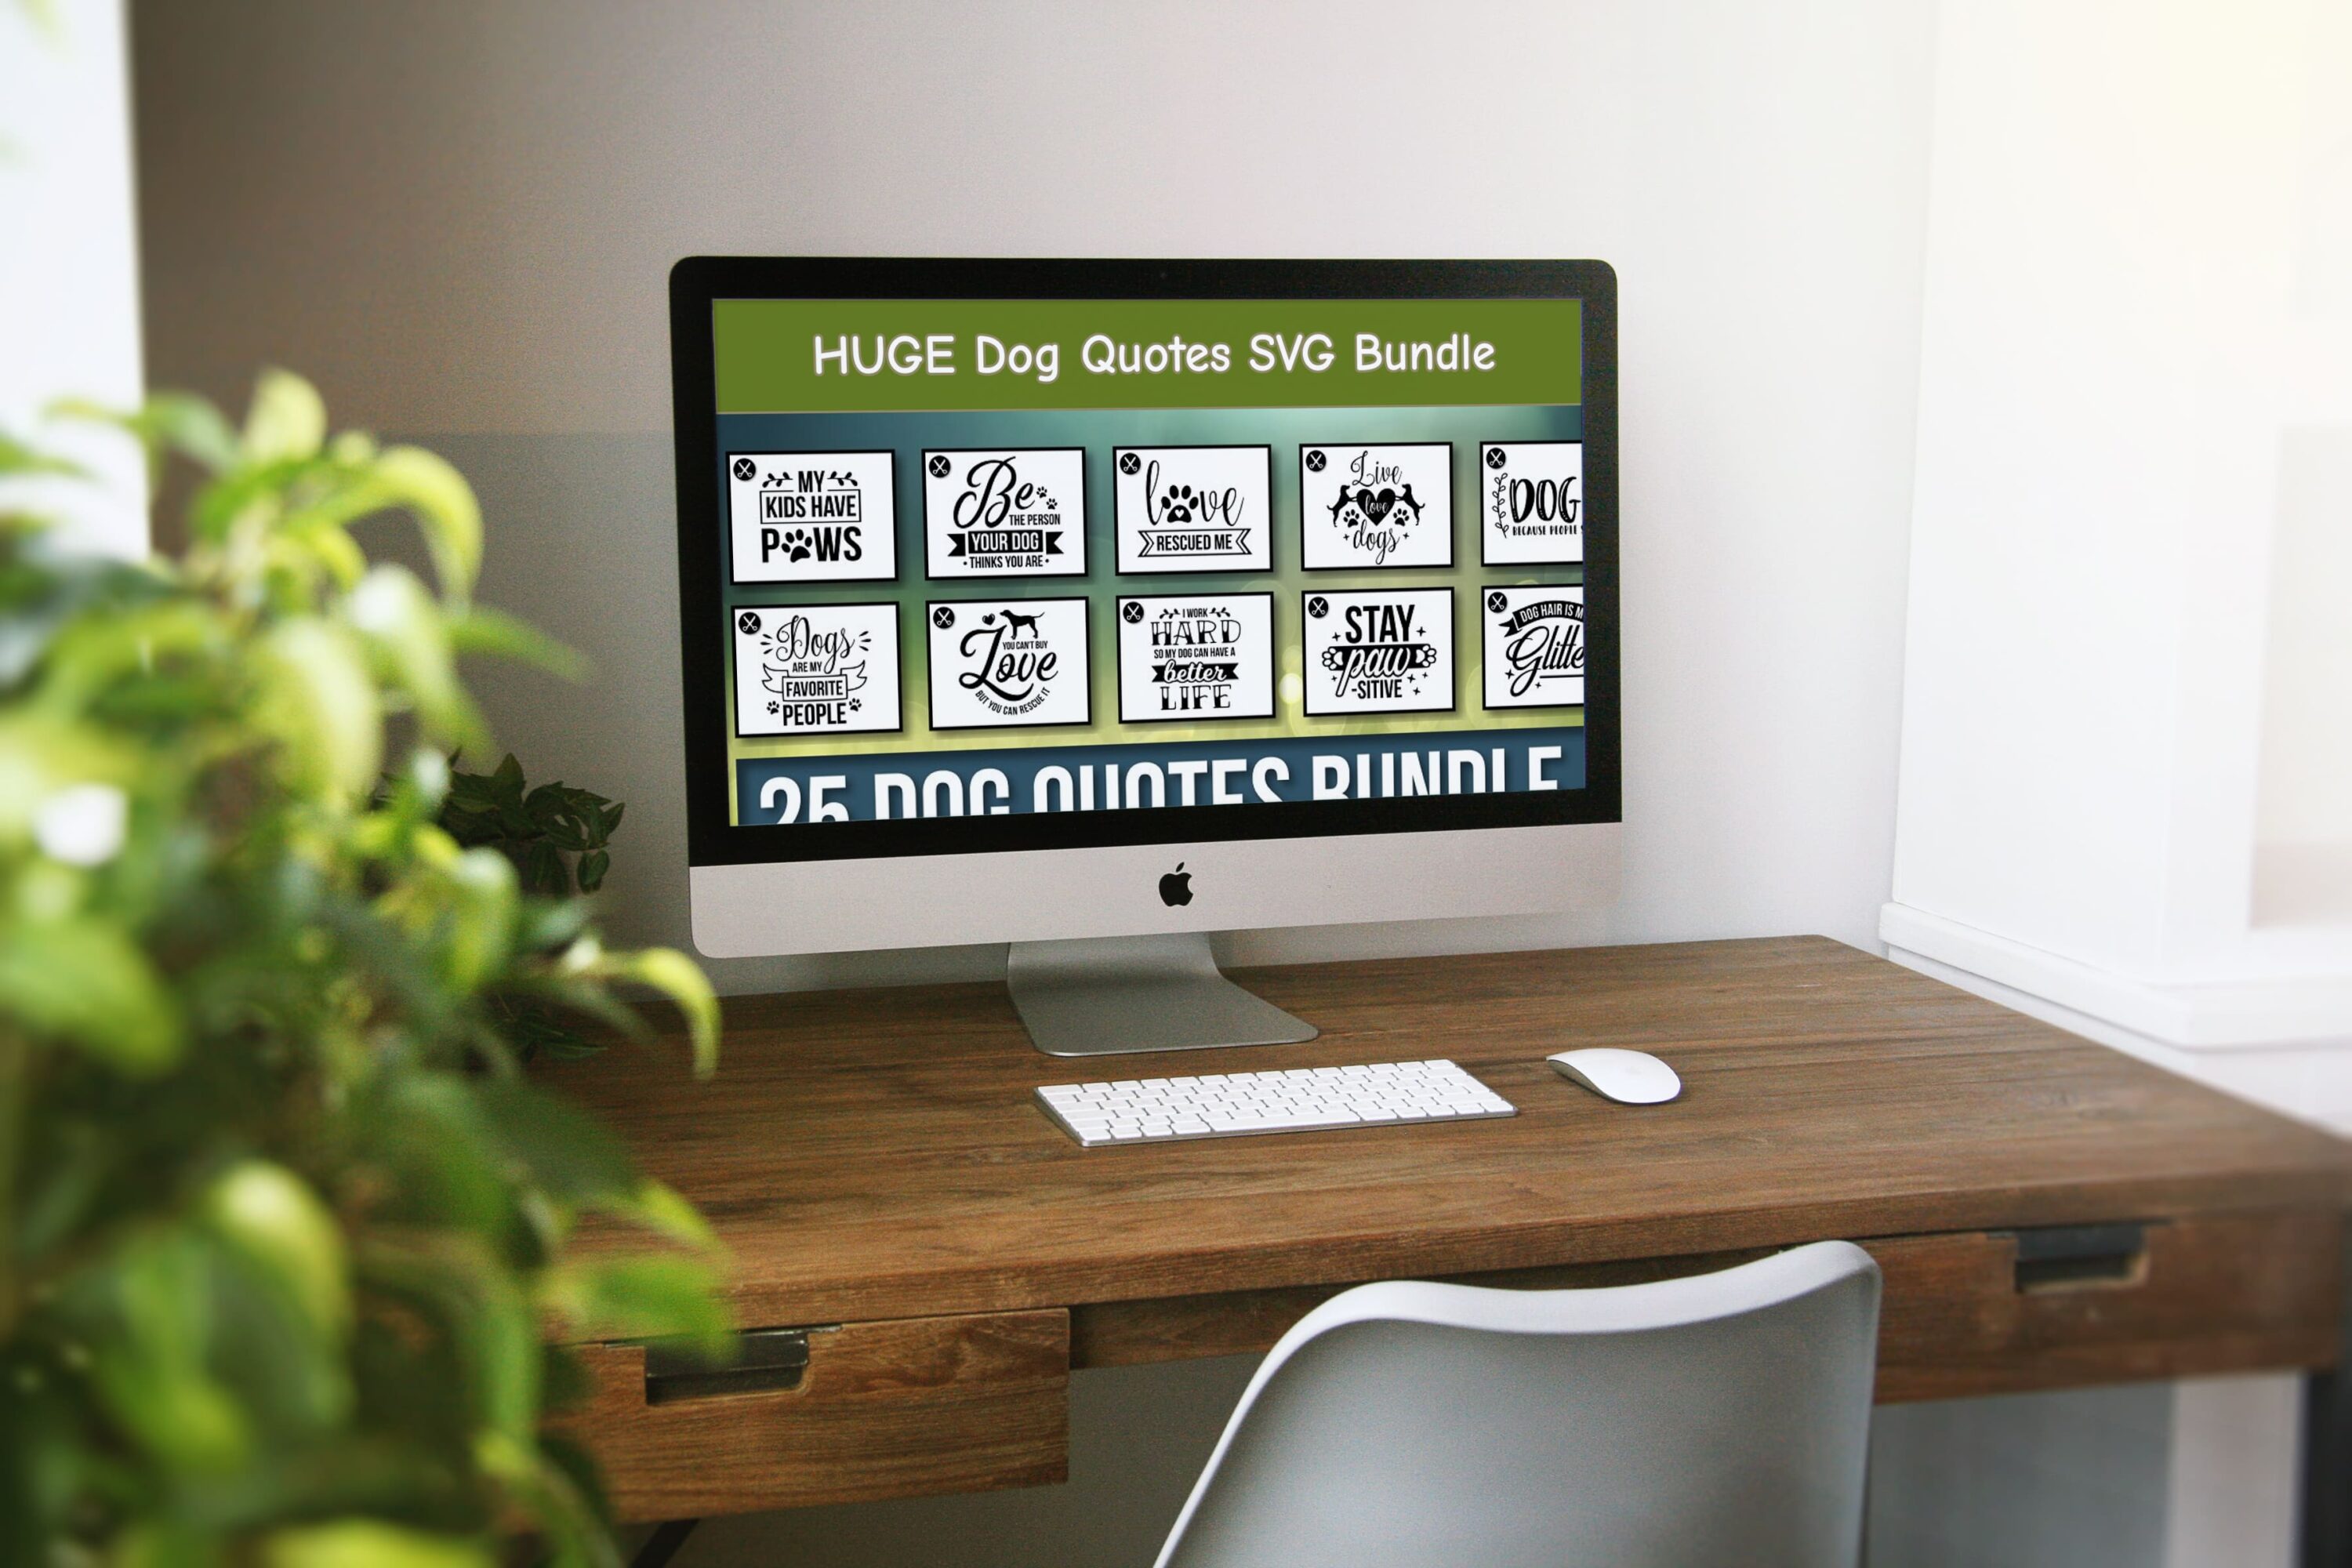 HUGE Dog Quotes SVG Bundle - desktop.